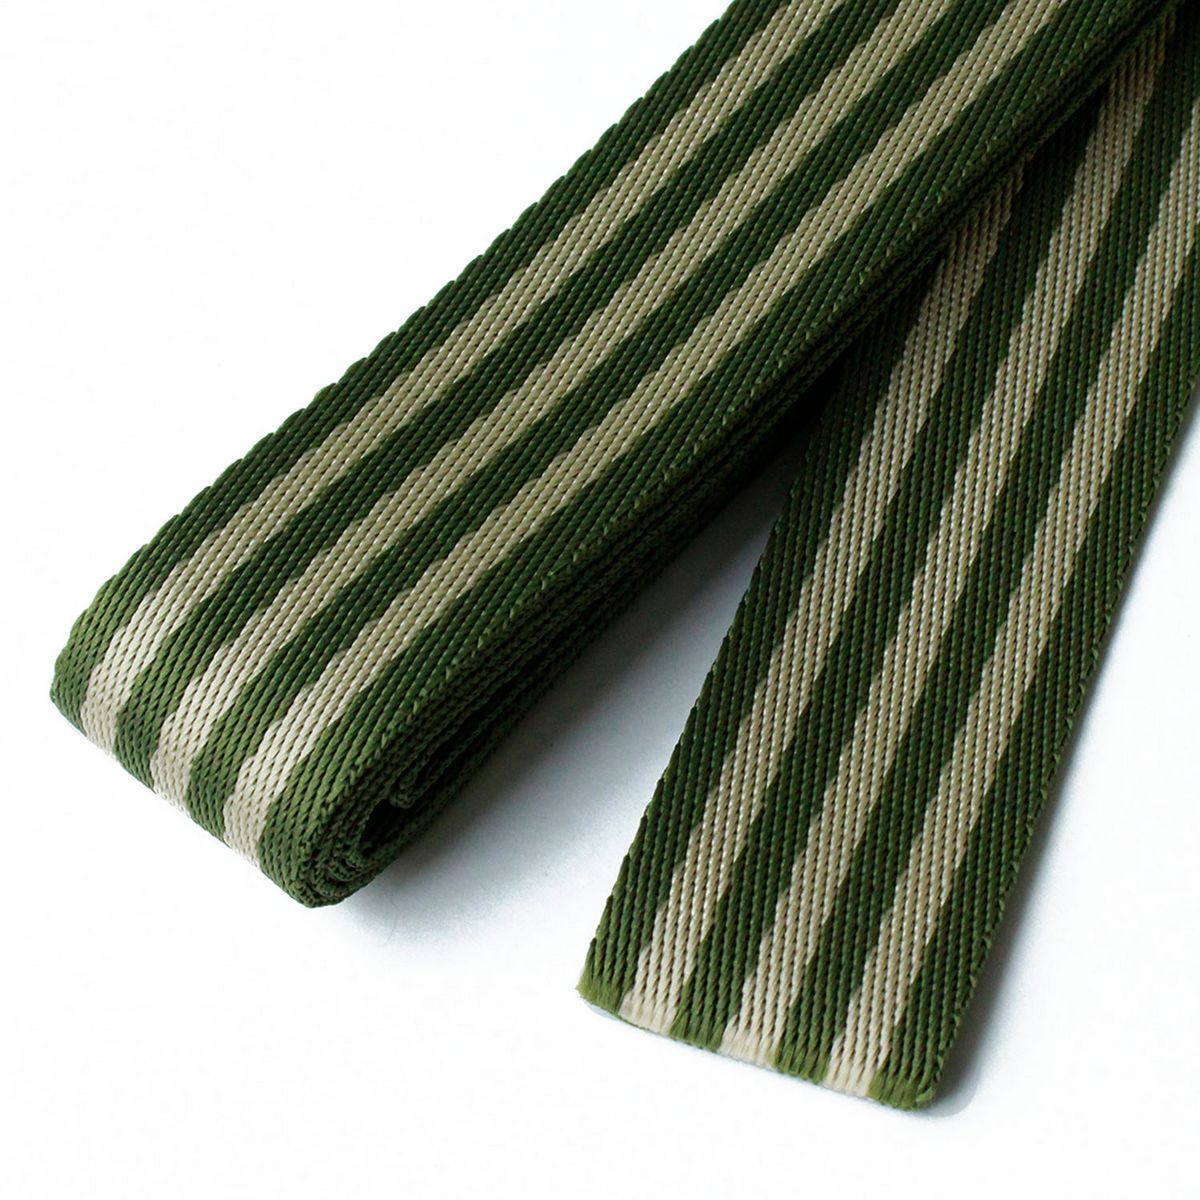 【サイズ】巾：38ミリメートル/長さ：約2.4mポリプロピレン入数：1巻■サイズ/巾38mm 厚み/約1.5mm 長さ/約2.4m■素材/ポリプロピレンしなやかさと丈夫さを両立した軽いポリテープ。かばんの持ち手にぴったり。色の組み合わせがさまざまなストライプが印象的です。（全23色）しなやかさと丈夫さを両立した軽いポリテープ。かばんの持ち手にぴったり。色の組み合わせがさまざまなストライプが印象的です。（全15色）ポリテープを使ったトートバッグを作れるオリジナルレシピ付き。◎お取り寄せ時、お届け日の確認や欠品のお知らせにお時間を頂く場合のある商品です。万一遅延や欠品が発生した場合には個別にご連絡を差し上げます。【お取り寄せ商品について】※こちらはお取り寄せ商品となります。現在メーカーデータ上在庫のあるものを掲載させて頂いておりますがメーカー実在庫の欠品等によりご注文いただいた後に欠品が発生する場合がございます。その場合にはメールにてご案内をさせて頂きます。20230318new手芸用品 レース・リボン・テープ・コード テープ・コード 手作り 材料/